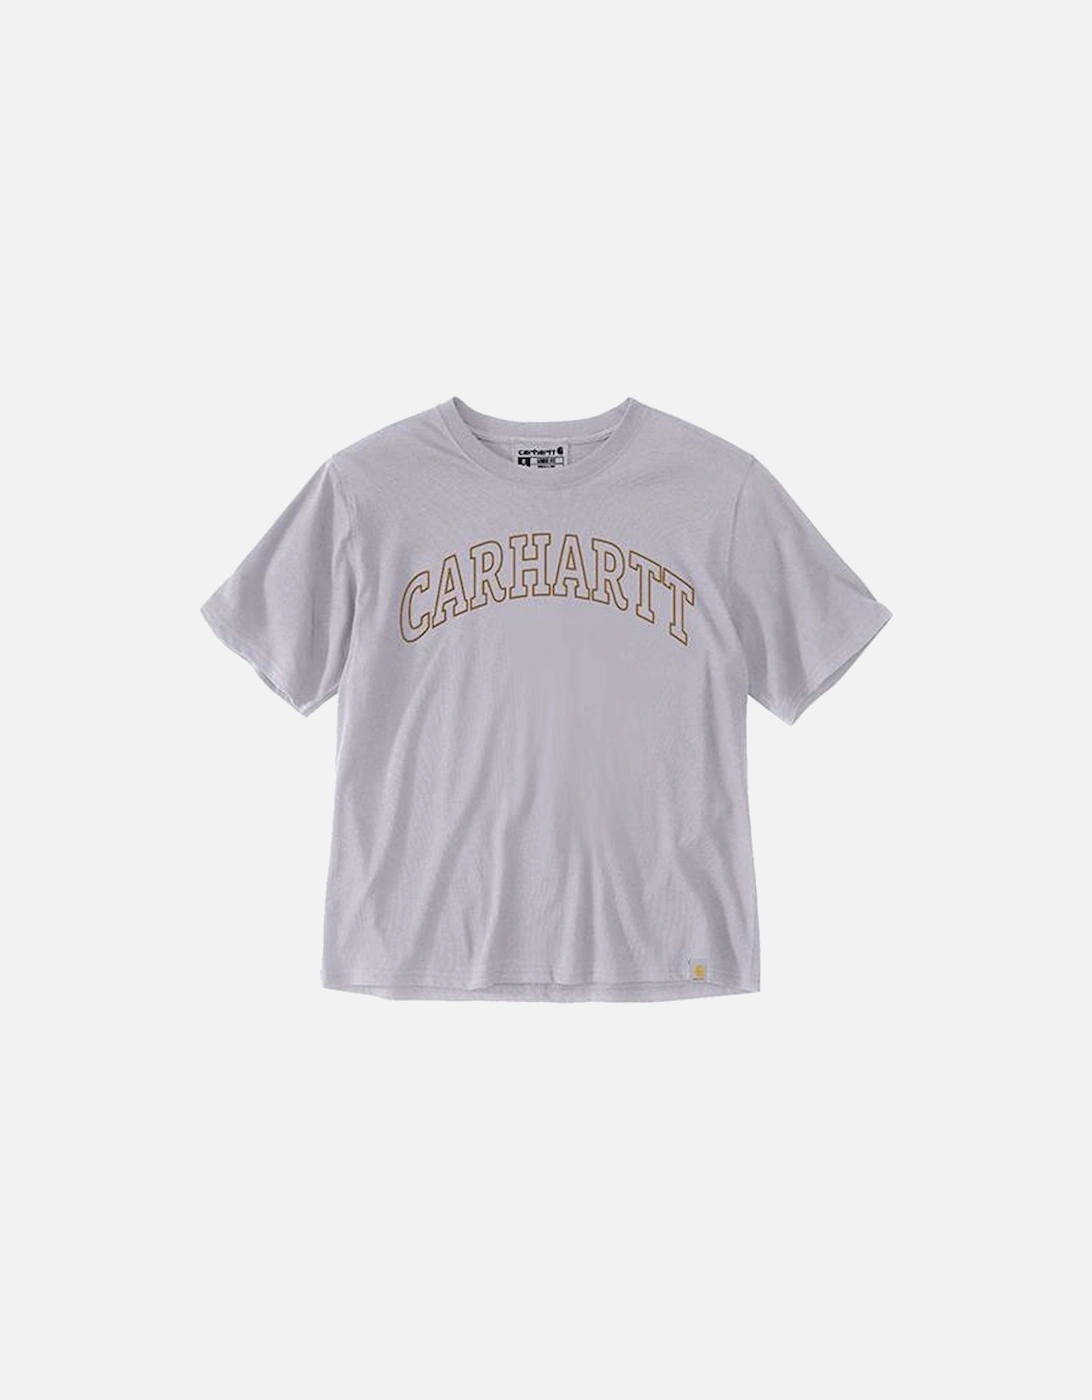 Carhartt Loose Fit Lightweight Short-Sleeve Carhartt Graphic T-Shirt Lilac Haze, 3 of 2